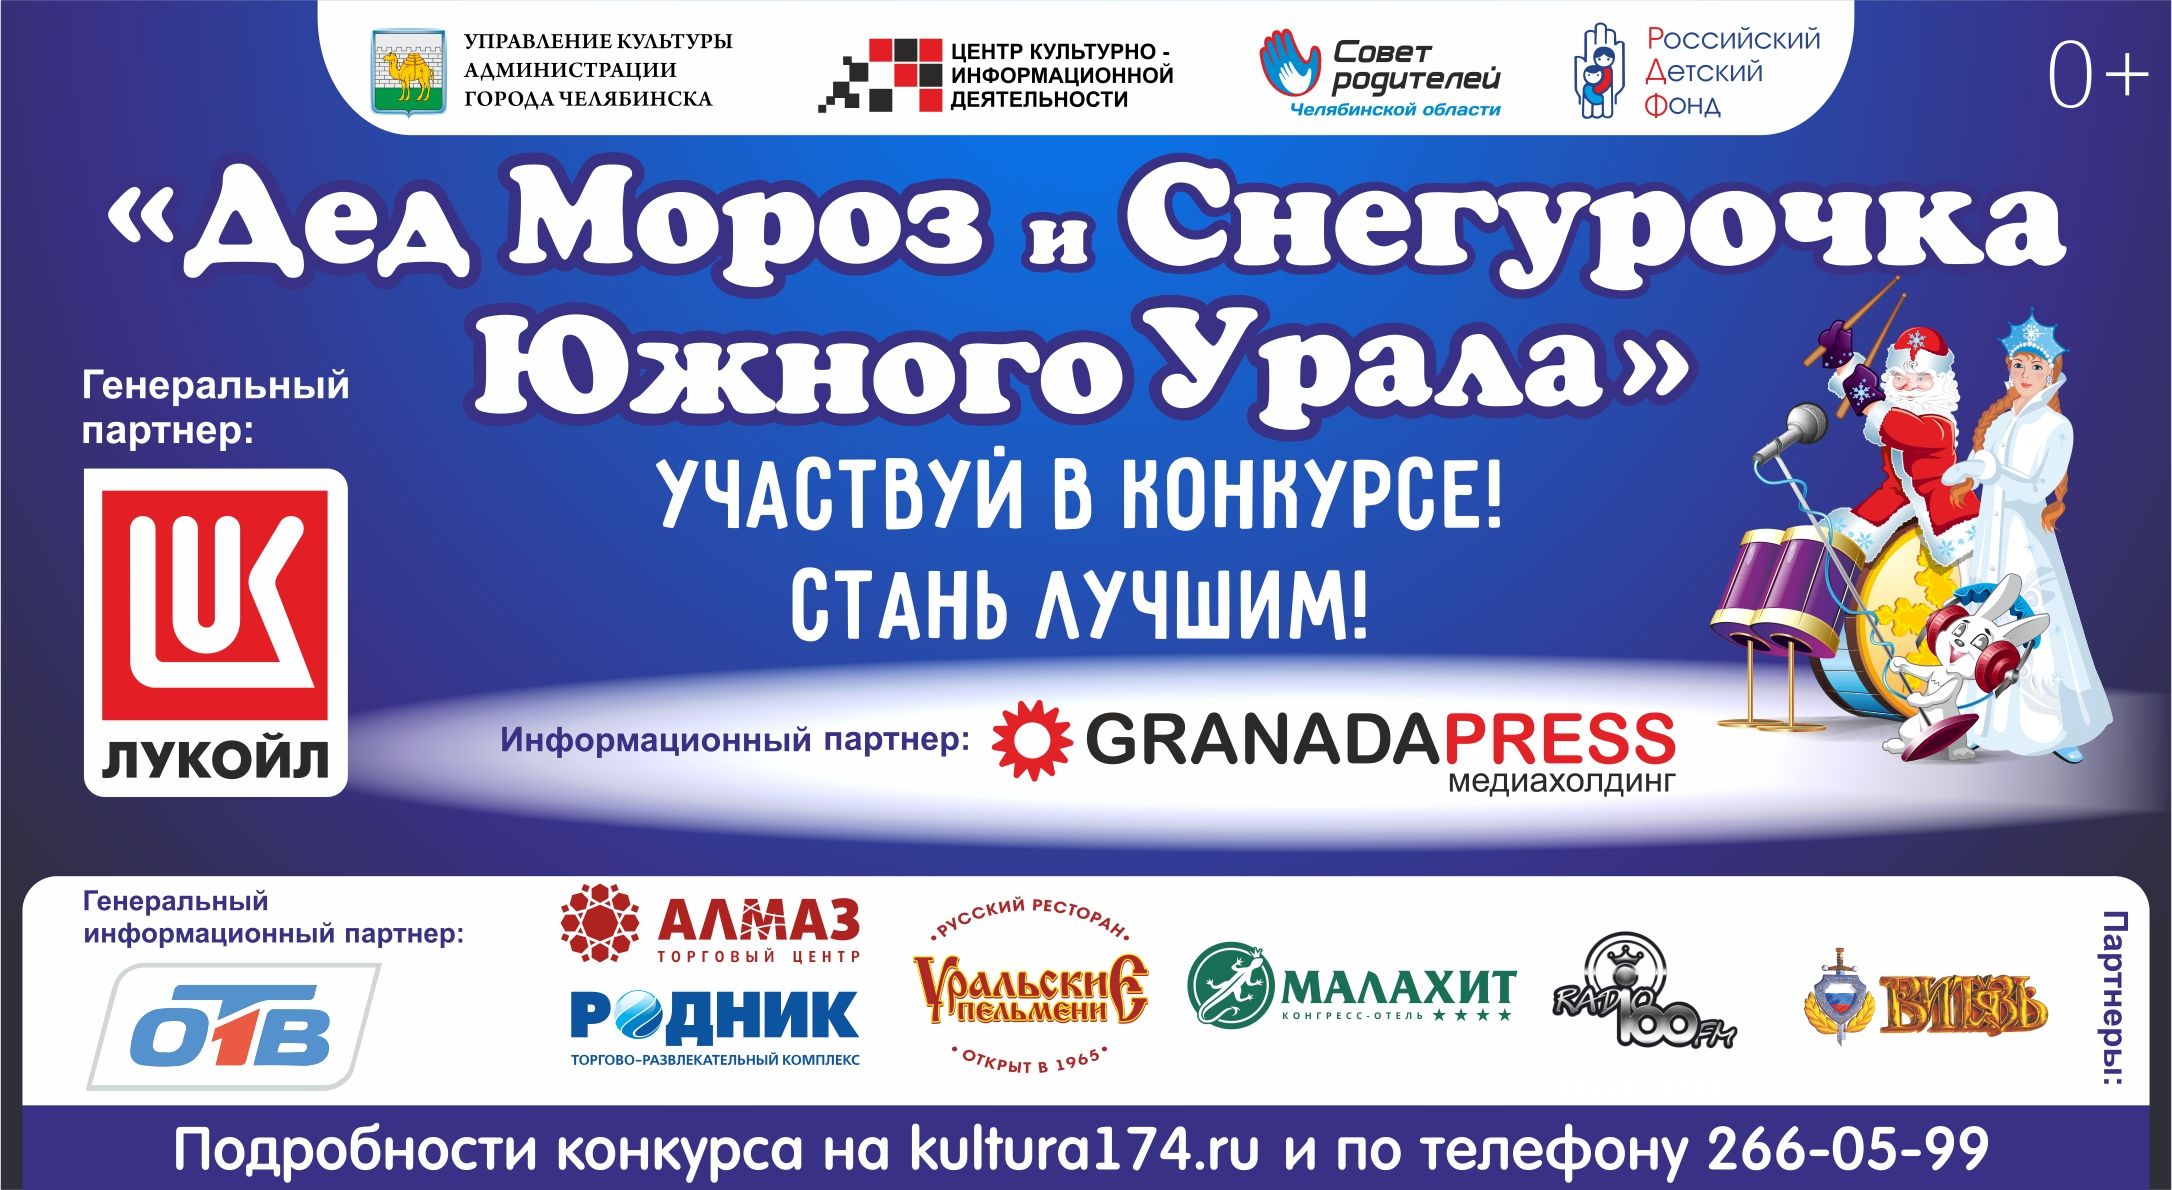 В Челябинске объявлено о начале конкурса «Дед Мороз и Снегурочка»